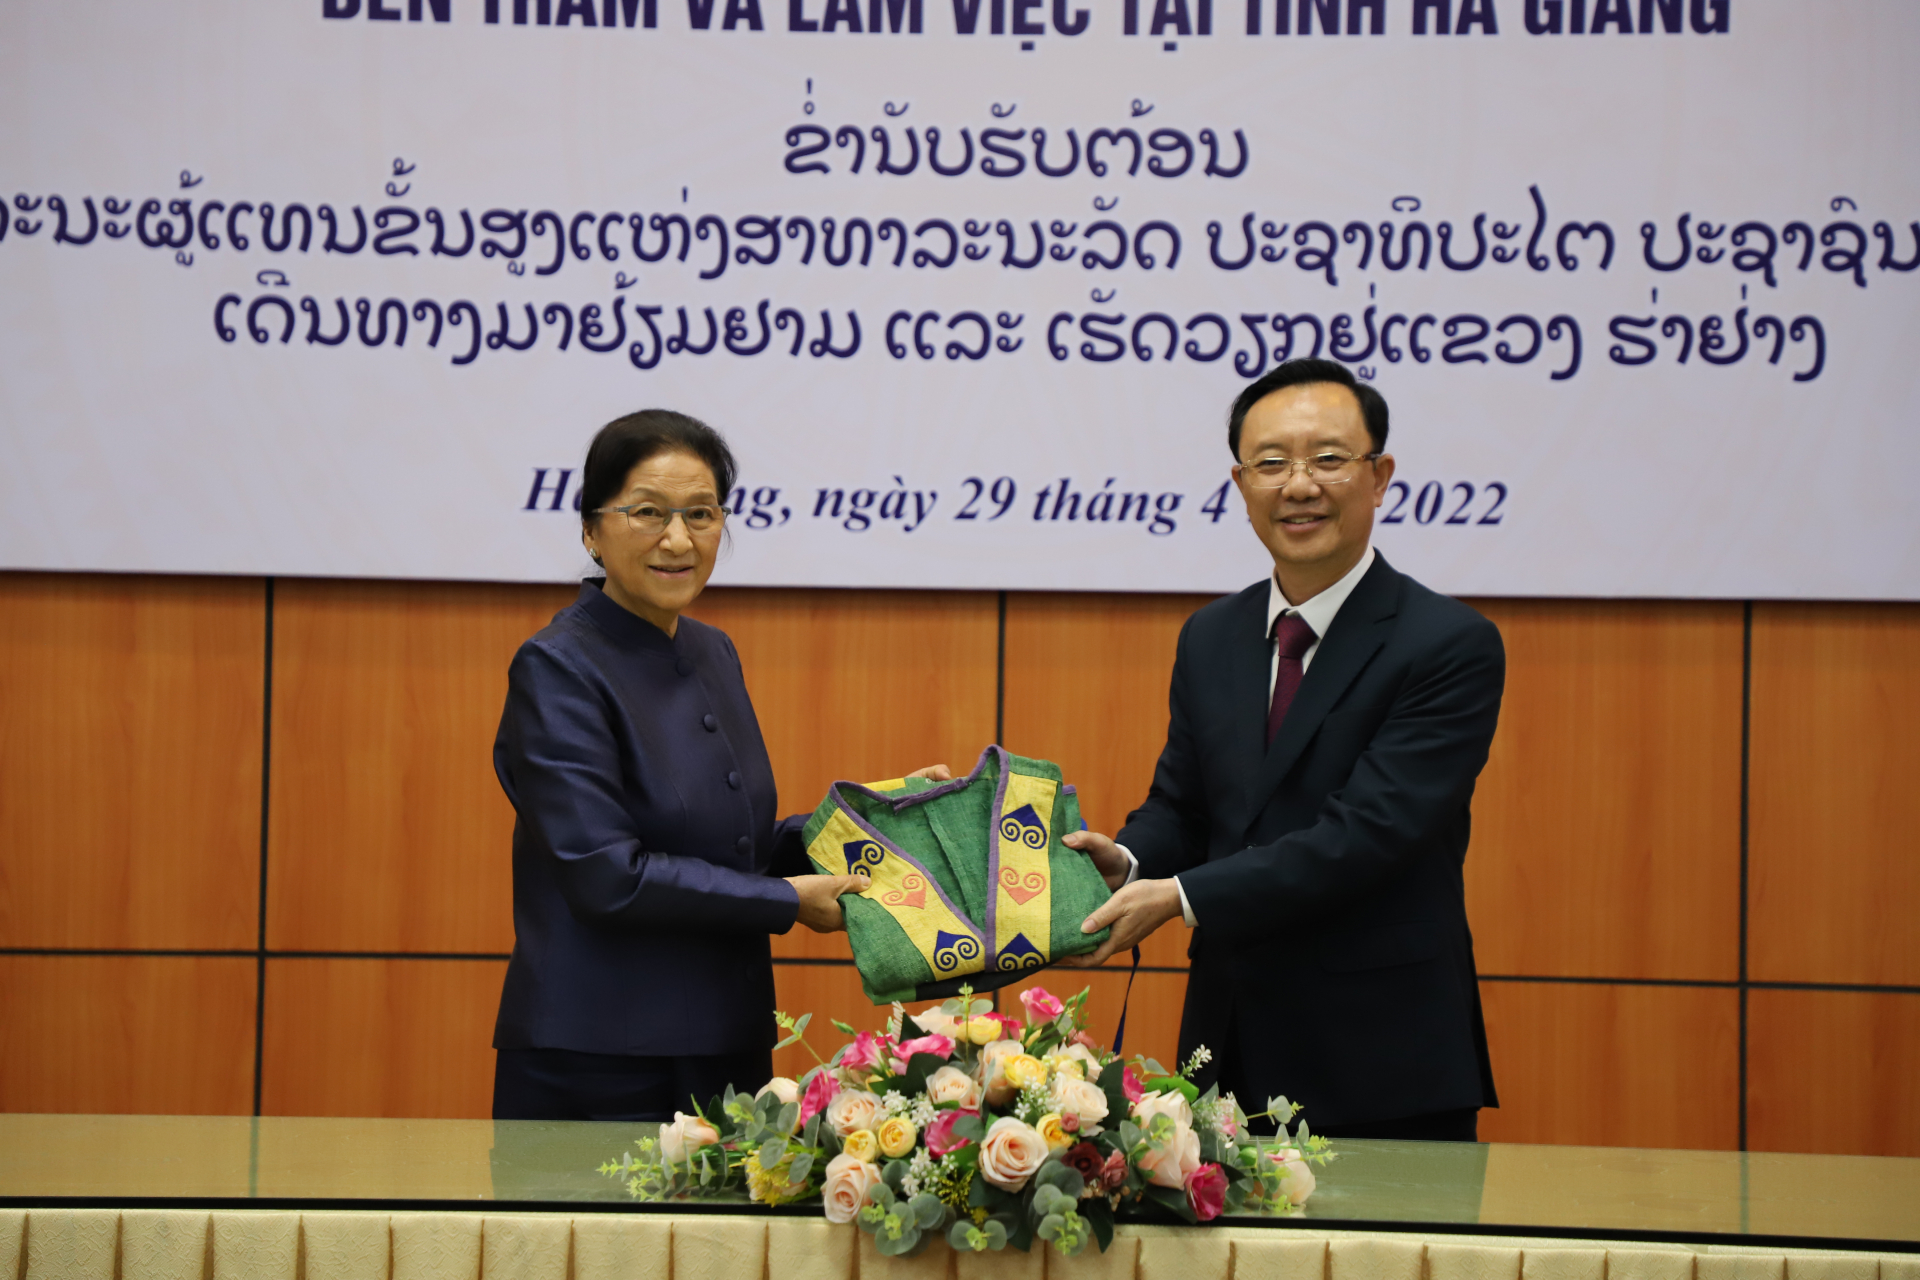 Đồng chí Thào Hồng Sơn, Phó Bí thư Tỉnh ủy, Chủ tịch HĐND tỉnh trao quà cho Phó Chủ tịch nước CHDCND Lào.
